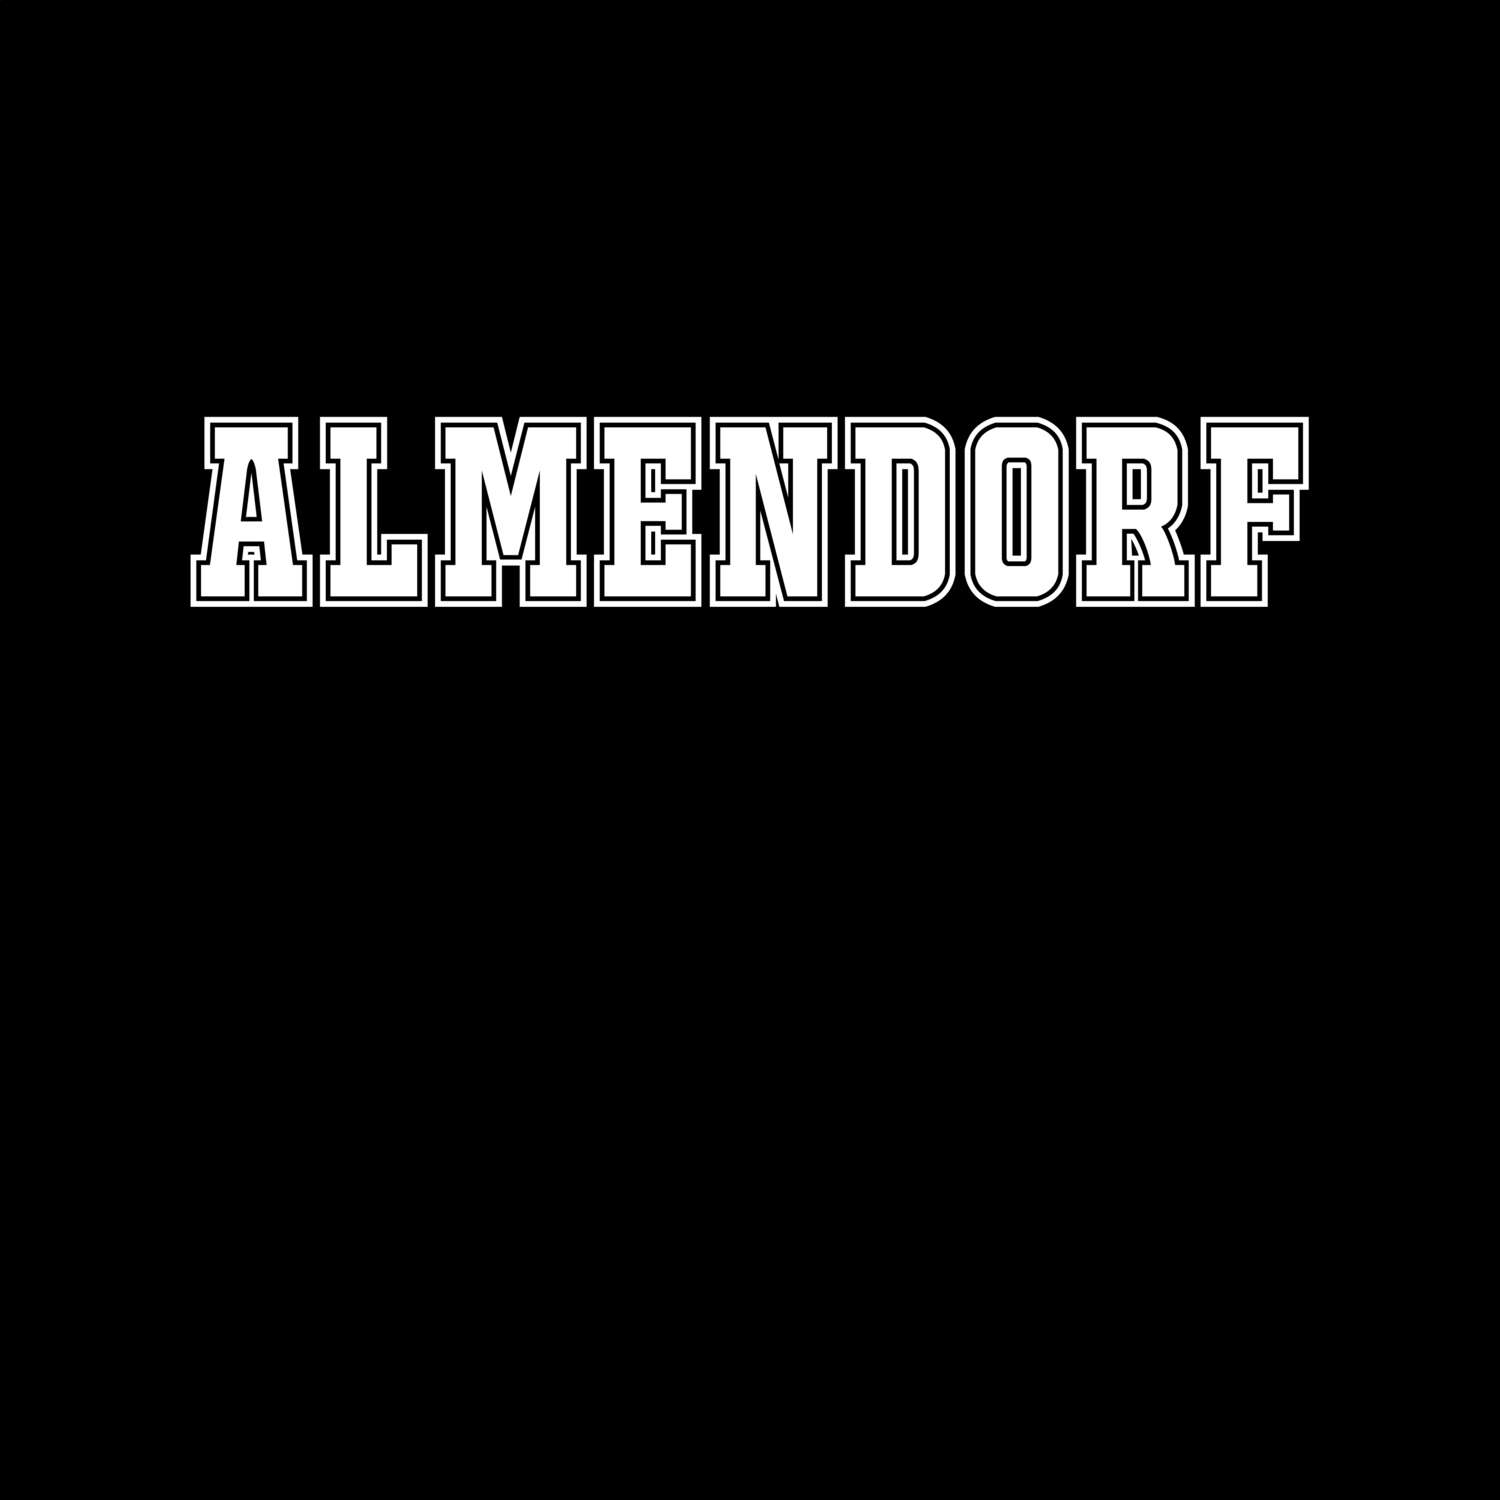 Almendorf T-Shirt »Classic«